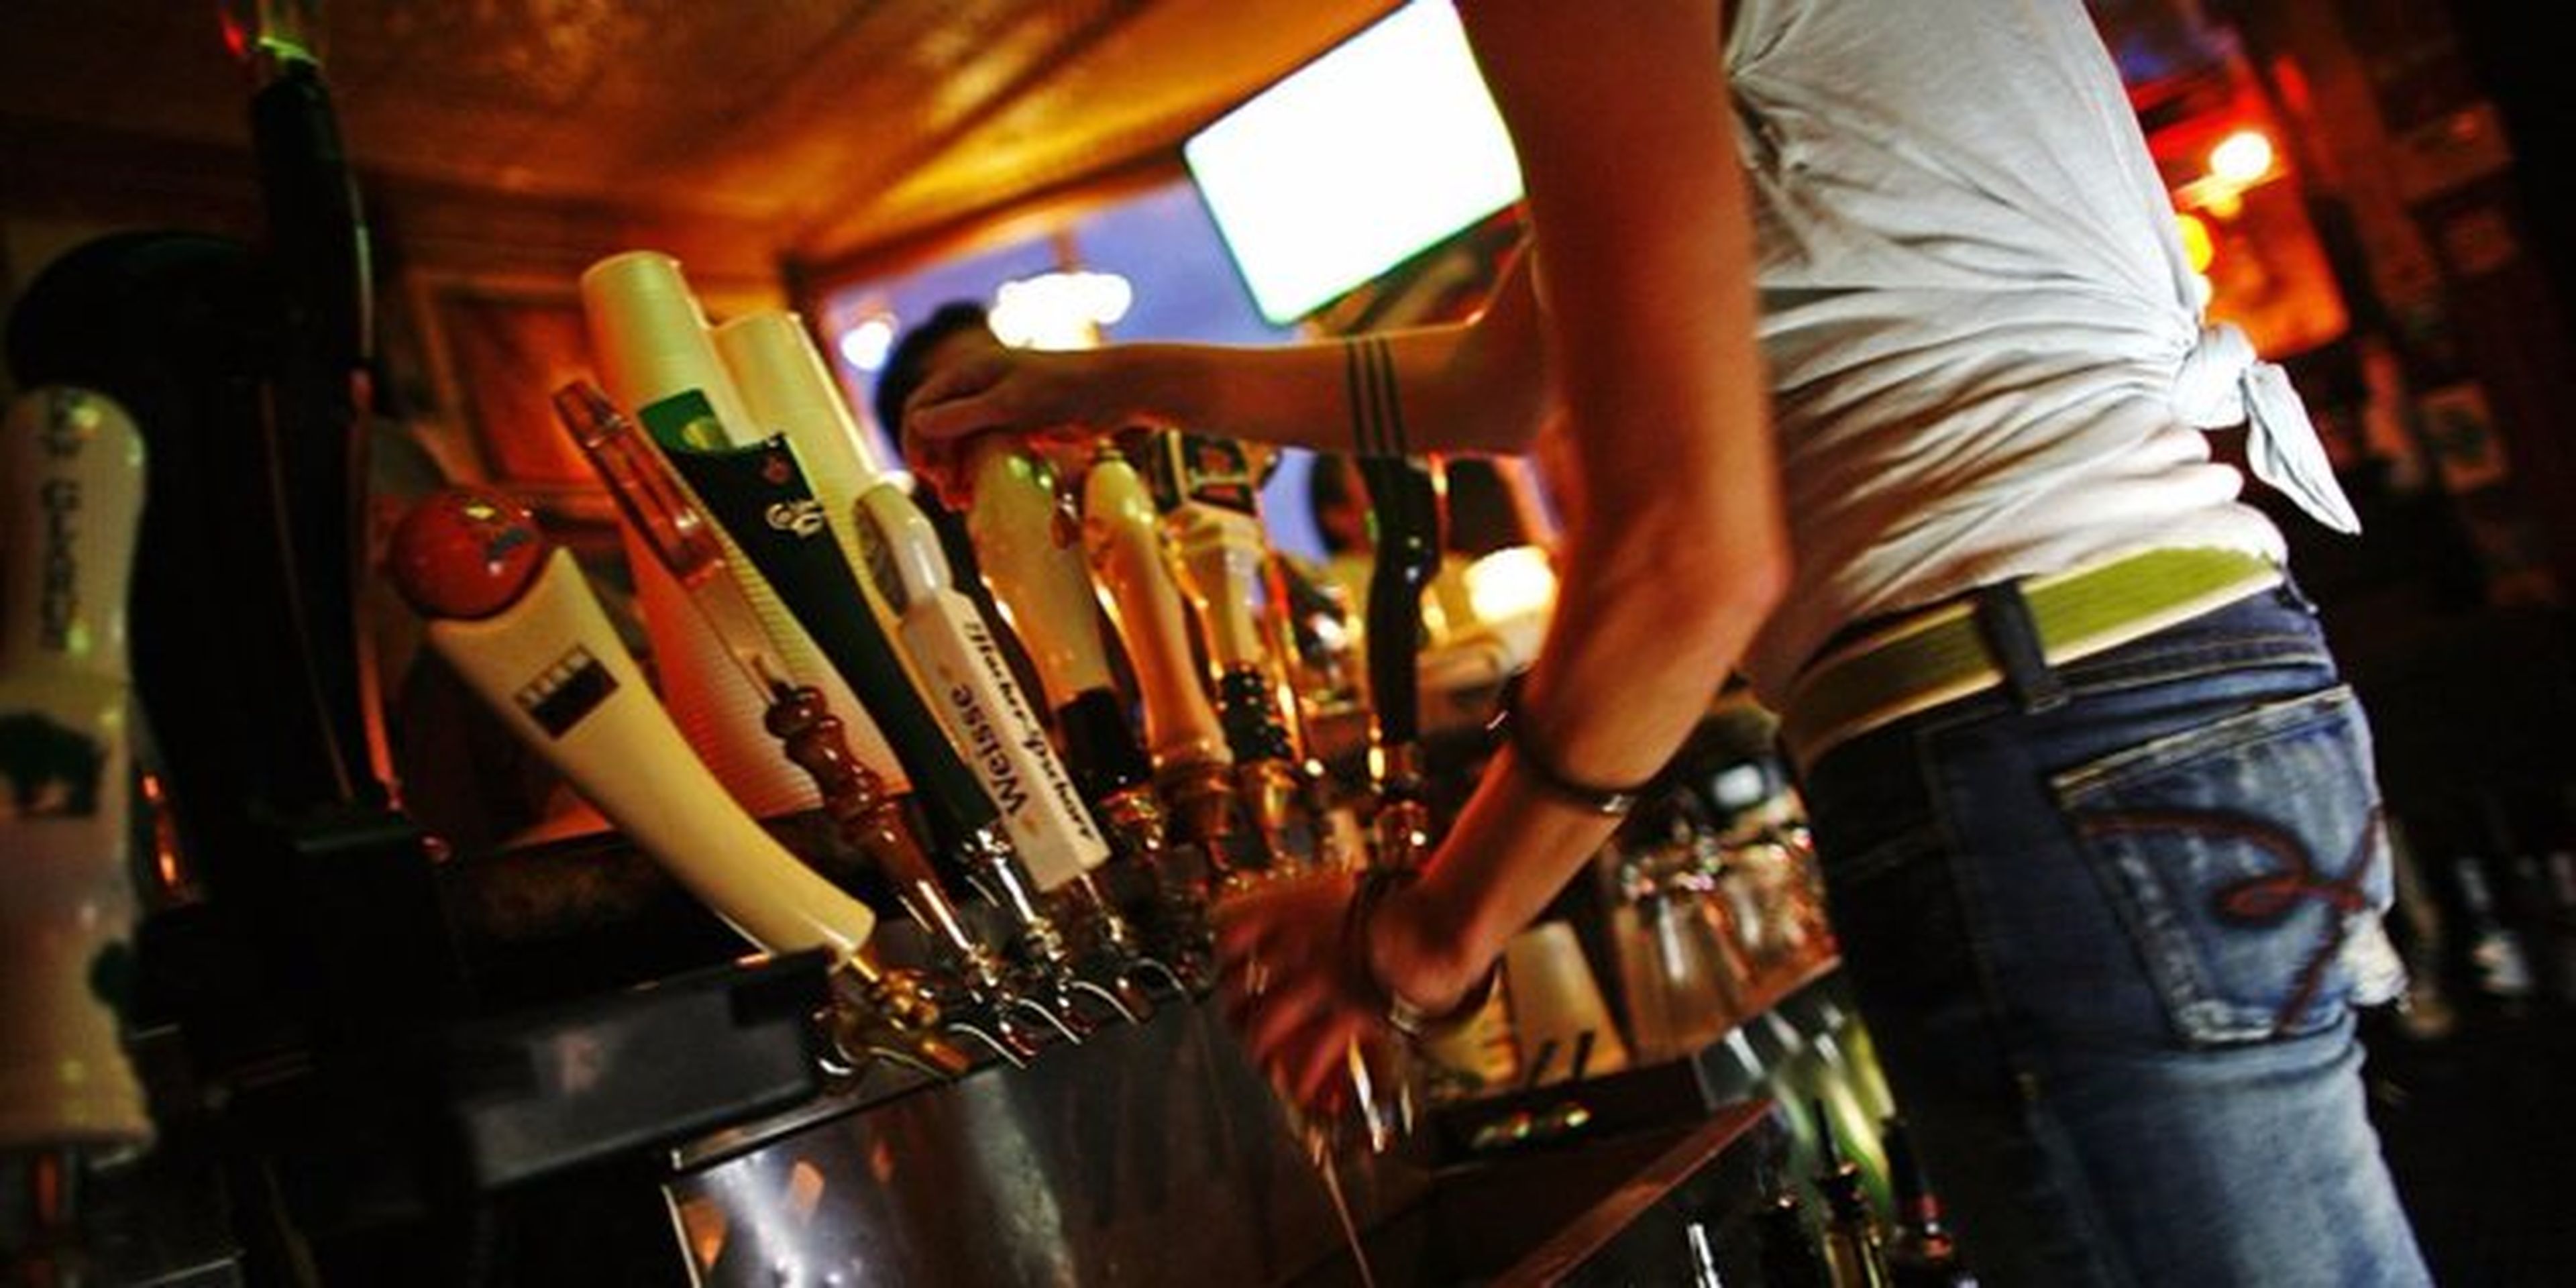 camarero sirviendo cerveza detrás de la barra del bar